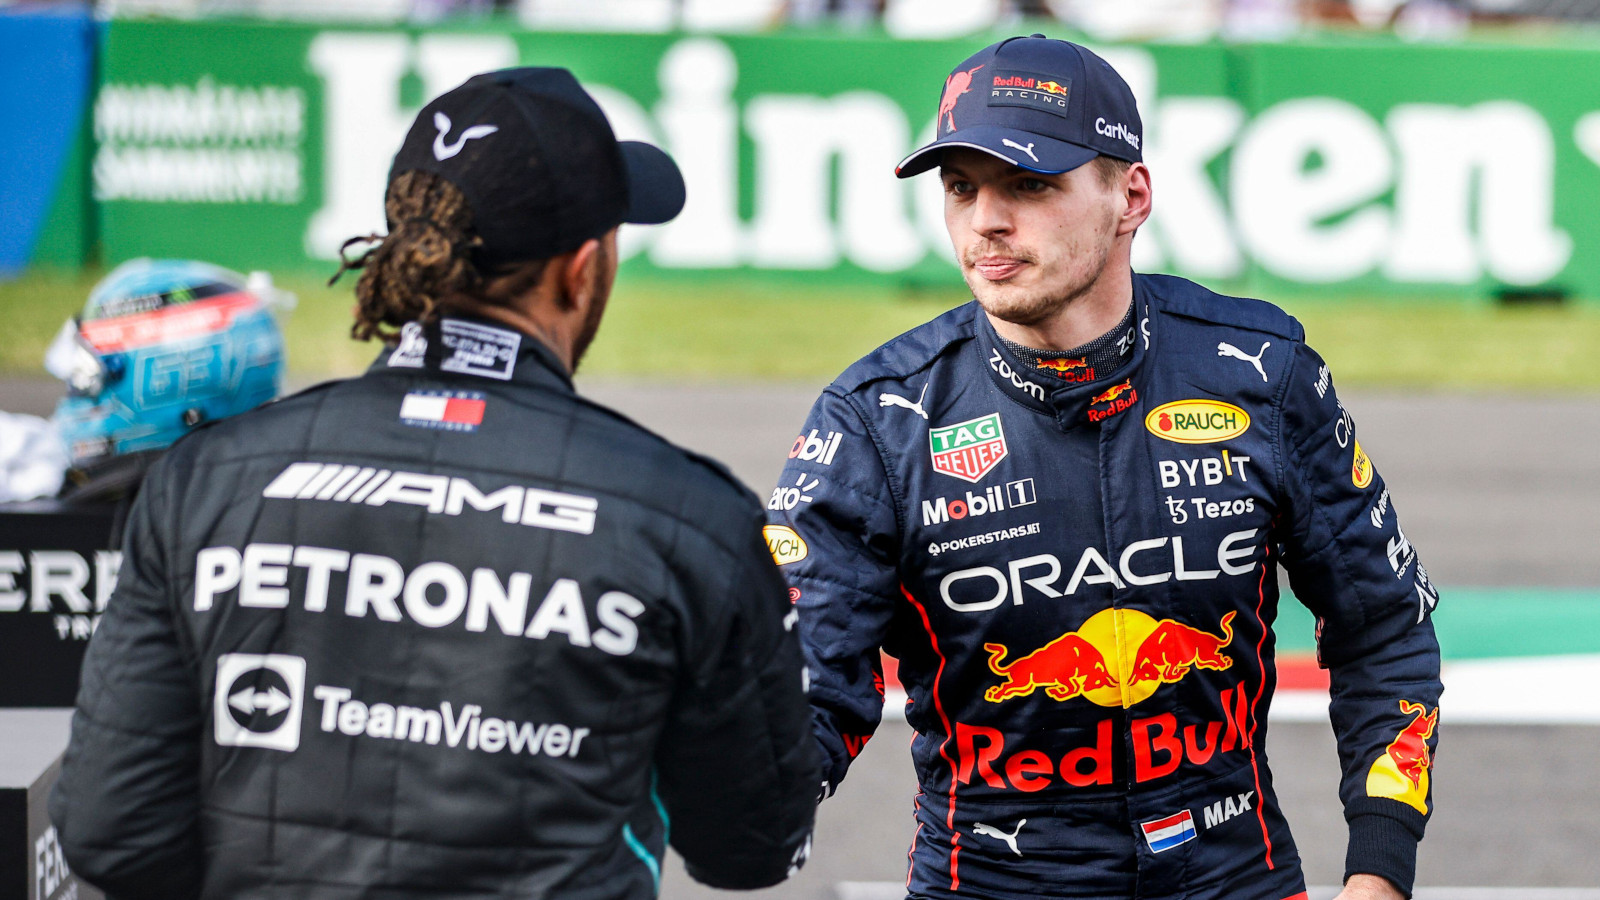 ‘Lewis Hamilton podría igualar el nivel de locura de Max Verstappen en el mismo auto’: PlanetF1